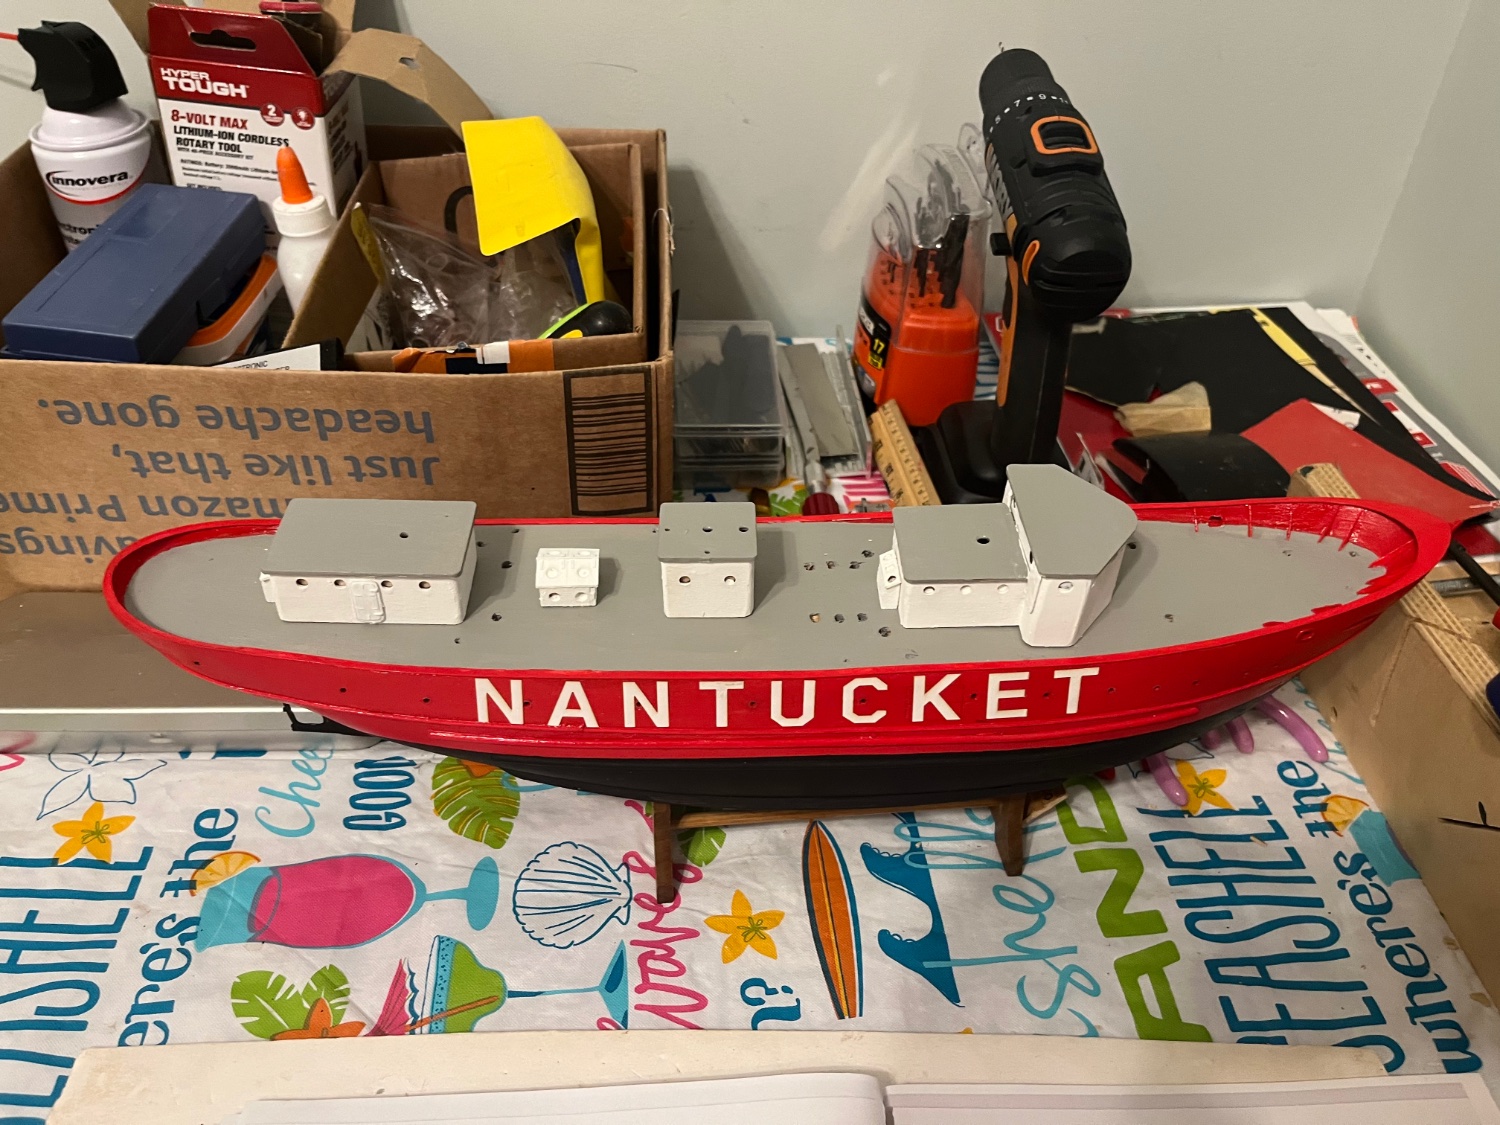 Bluejacket Nantucket Lightship